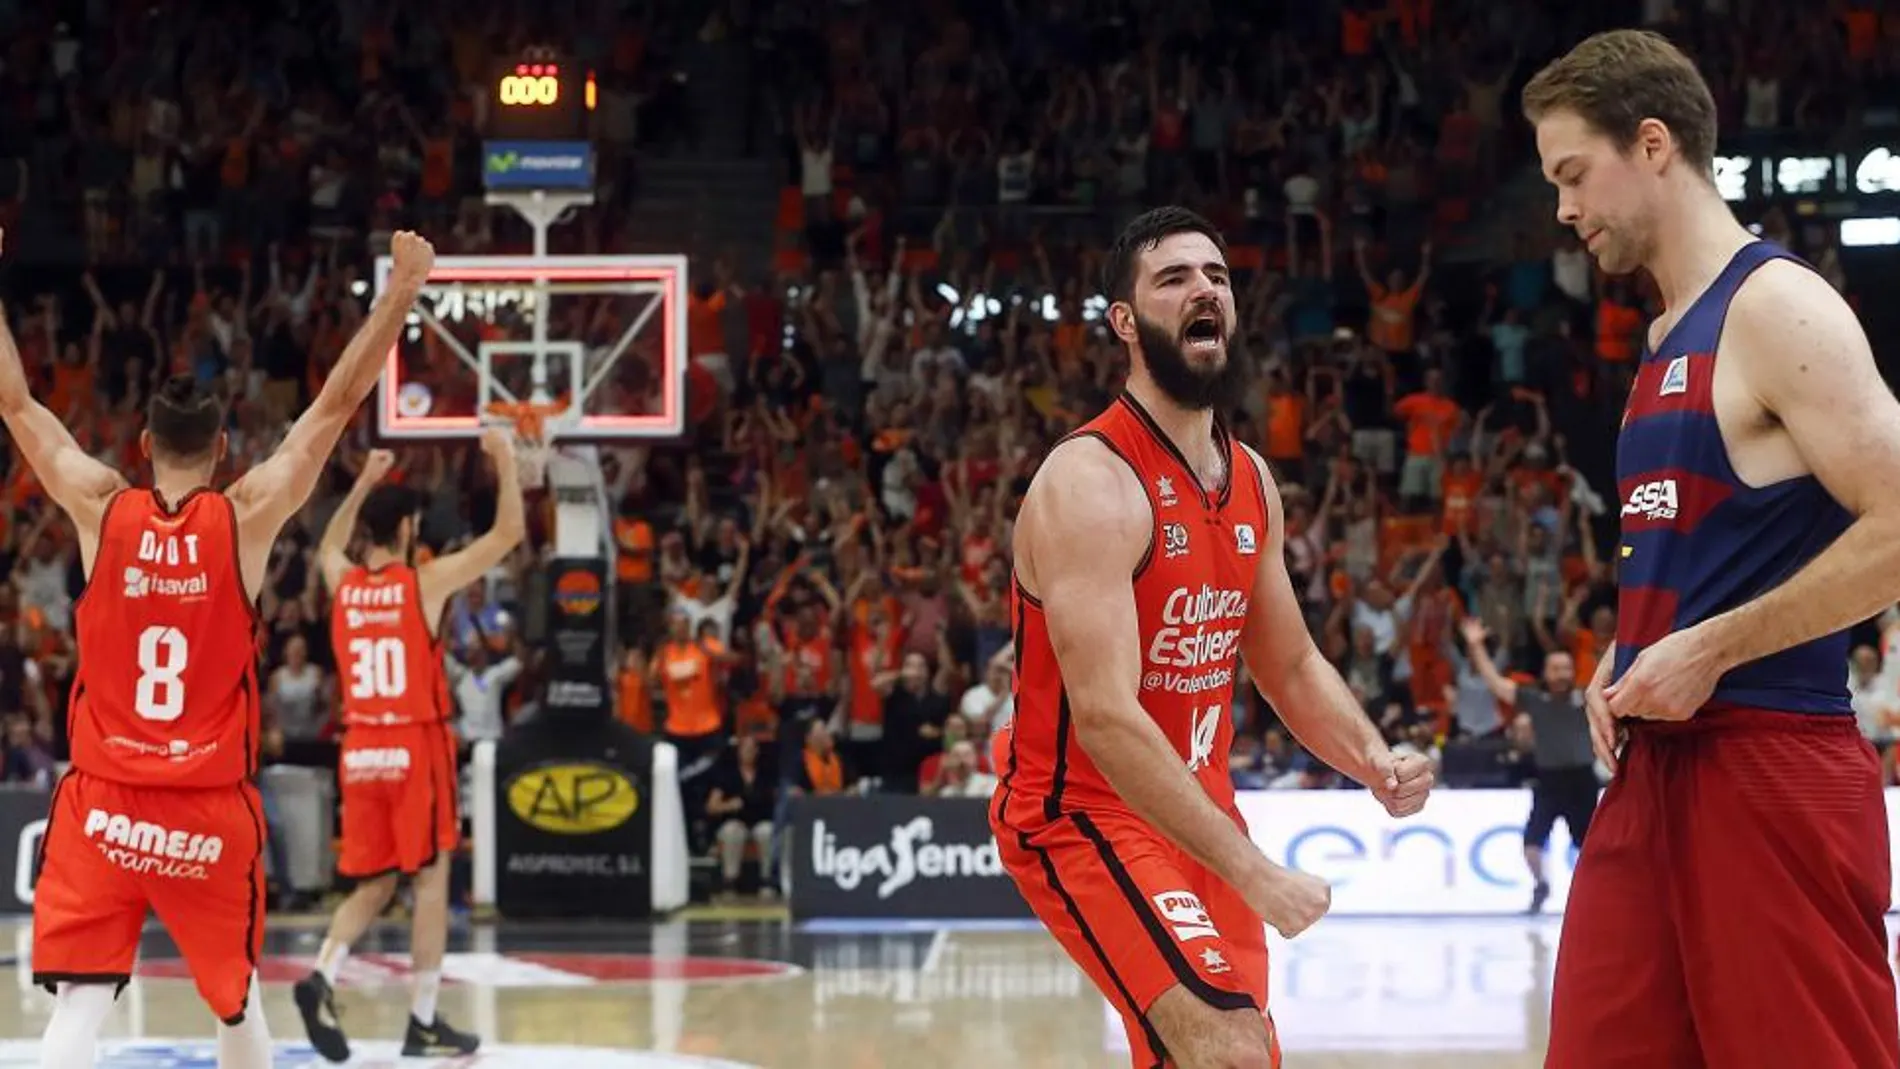 Los jugadores del Valencia Basket celebran su victoria sobre el Barcelona Lassa al finalizar el tercer y definitivo encuentro de su serie de cuartos de final de Liga que disputan en Valencia.